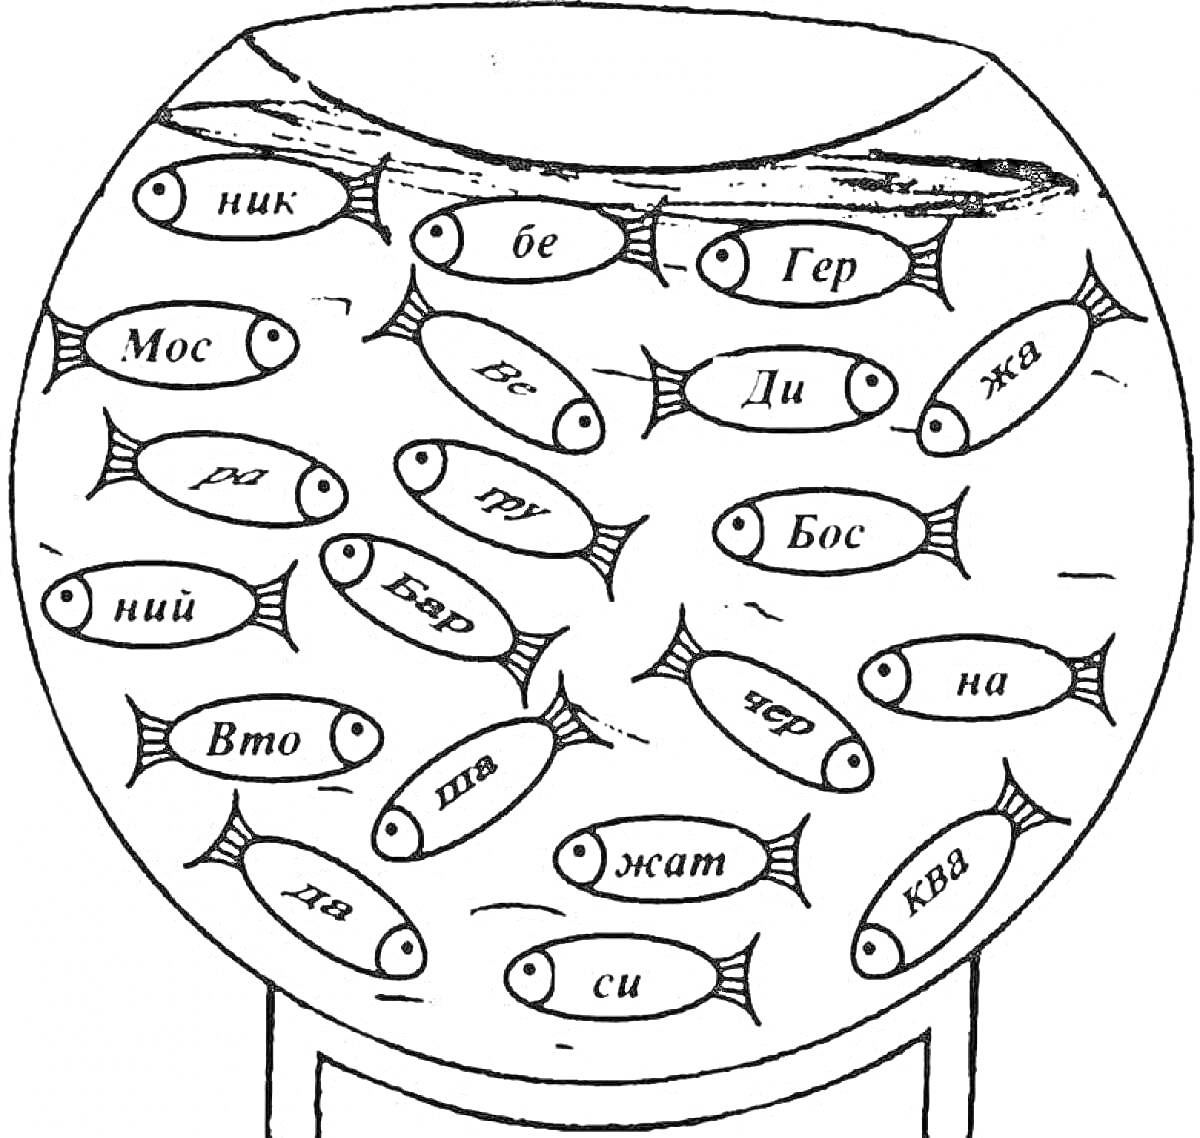 Раскраска Раскраска с аквариумом и рыбками с заданиями по слогам для 2 класса (ник, бе, Гер, Моск, ра, тю, Ди, жва, ний, Бяр, ска, не, Вто, па, жма, чёр, на, ха, си, ква)